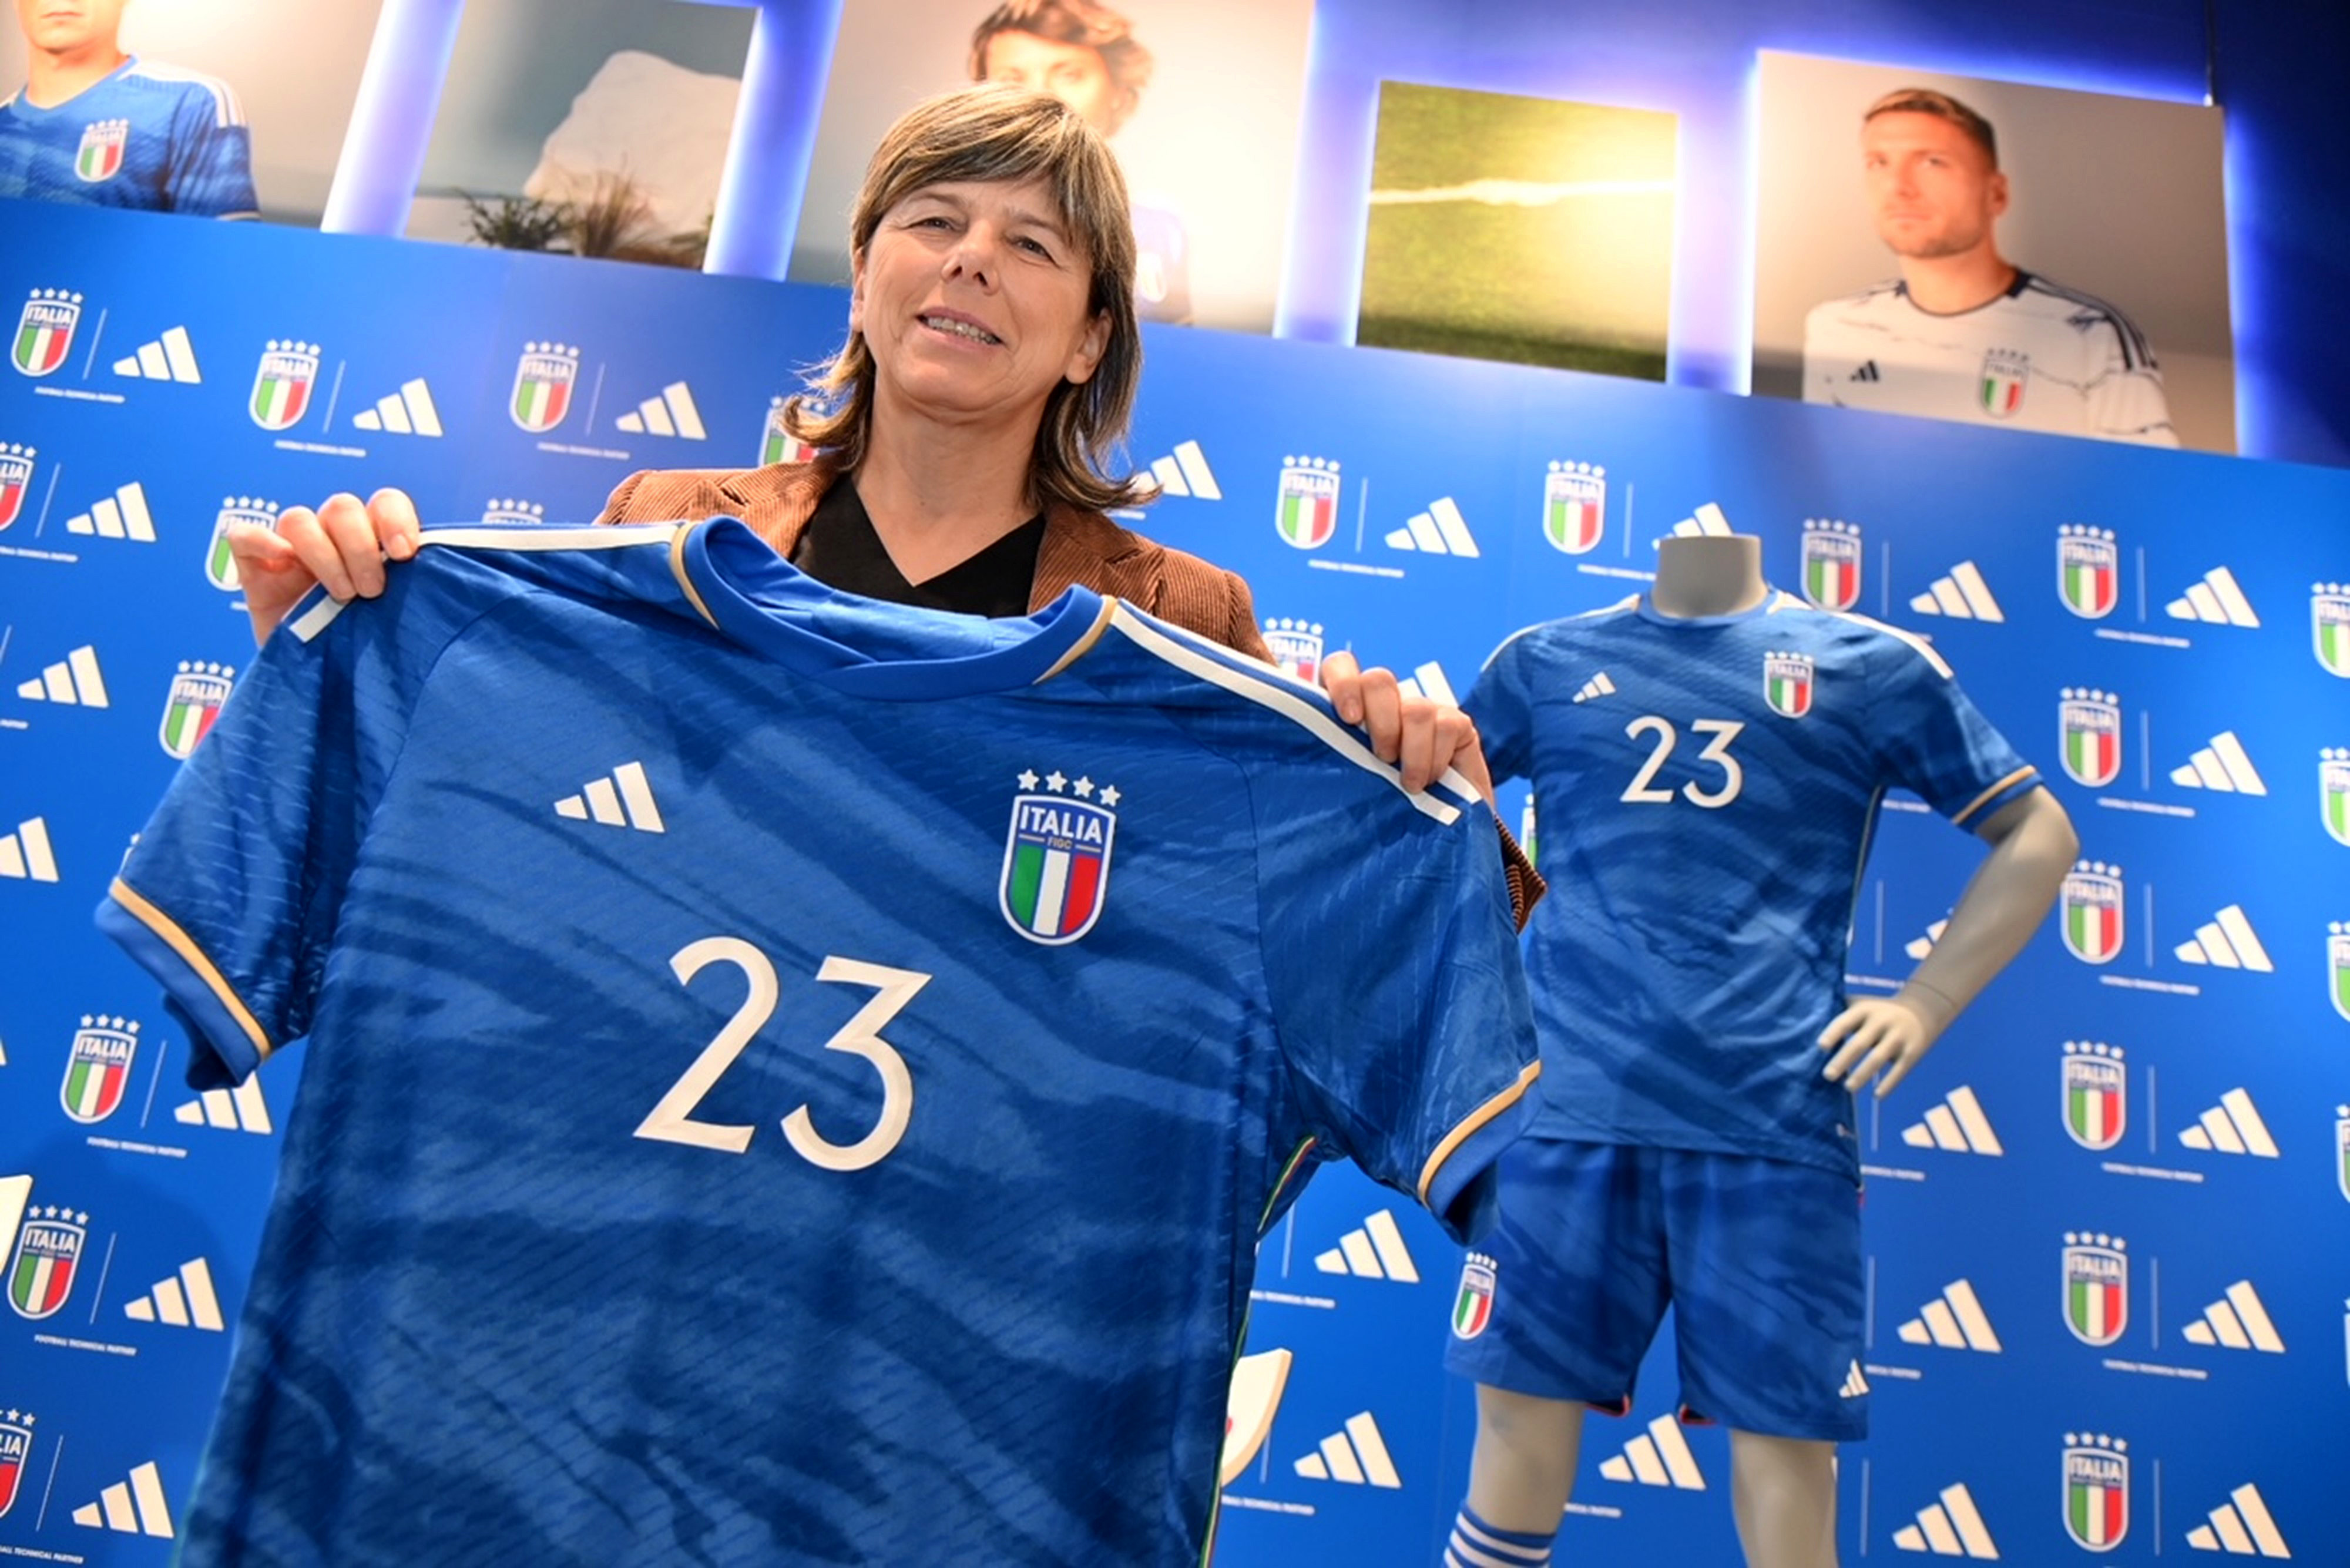 Presentata partnership FIGC-adidas. inizia una nuova per il calcio italiano: speriamo di festeggiare successi insieme" | FIGC